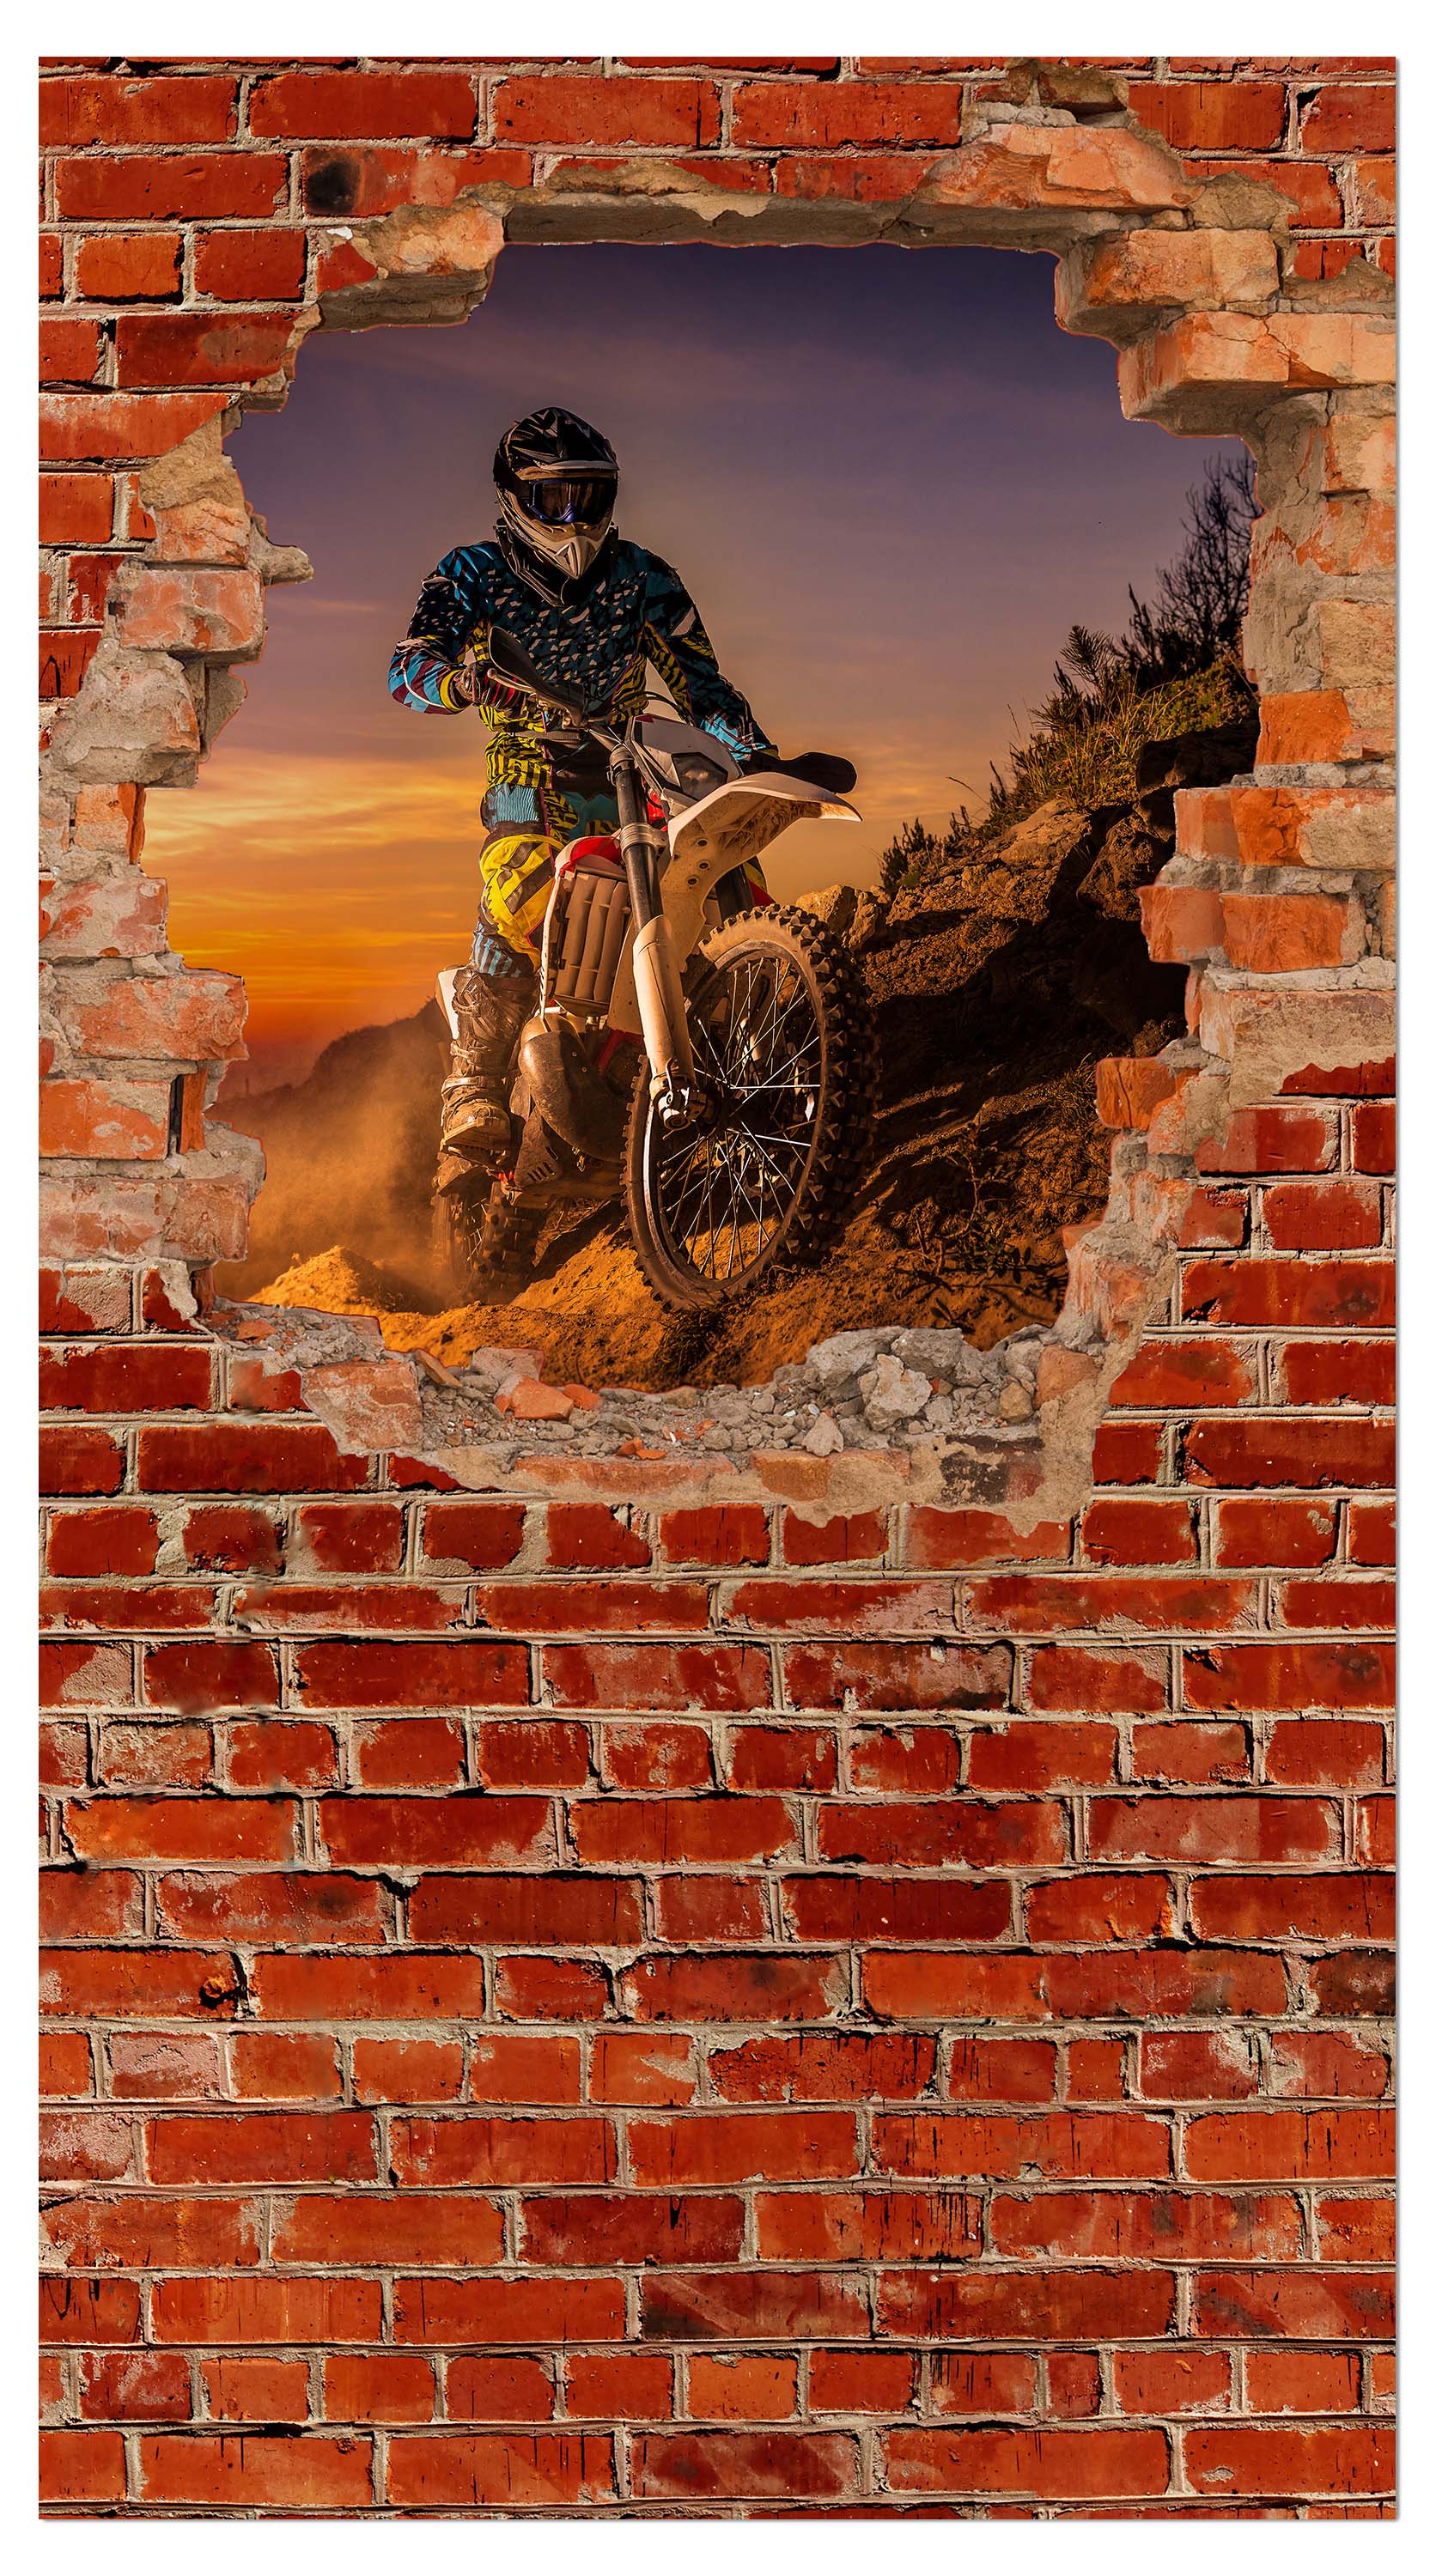 Garderobe Extreme Biker - Roter Backstein M0620 entdecken - Bild 4